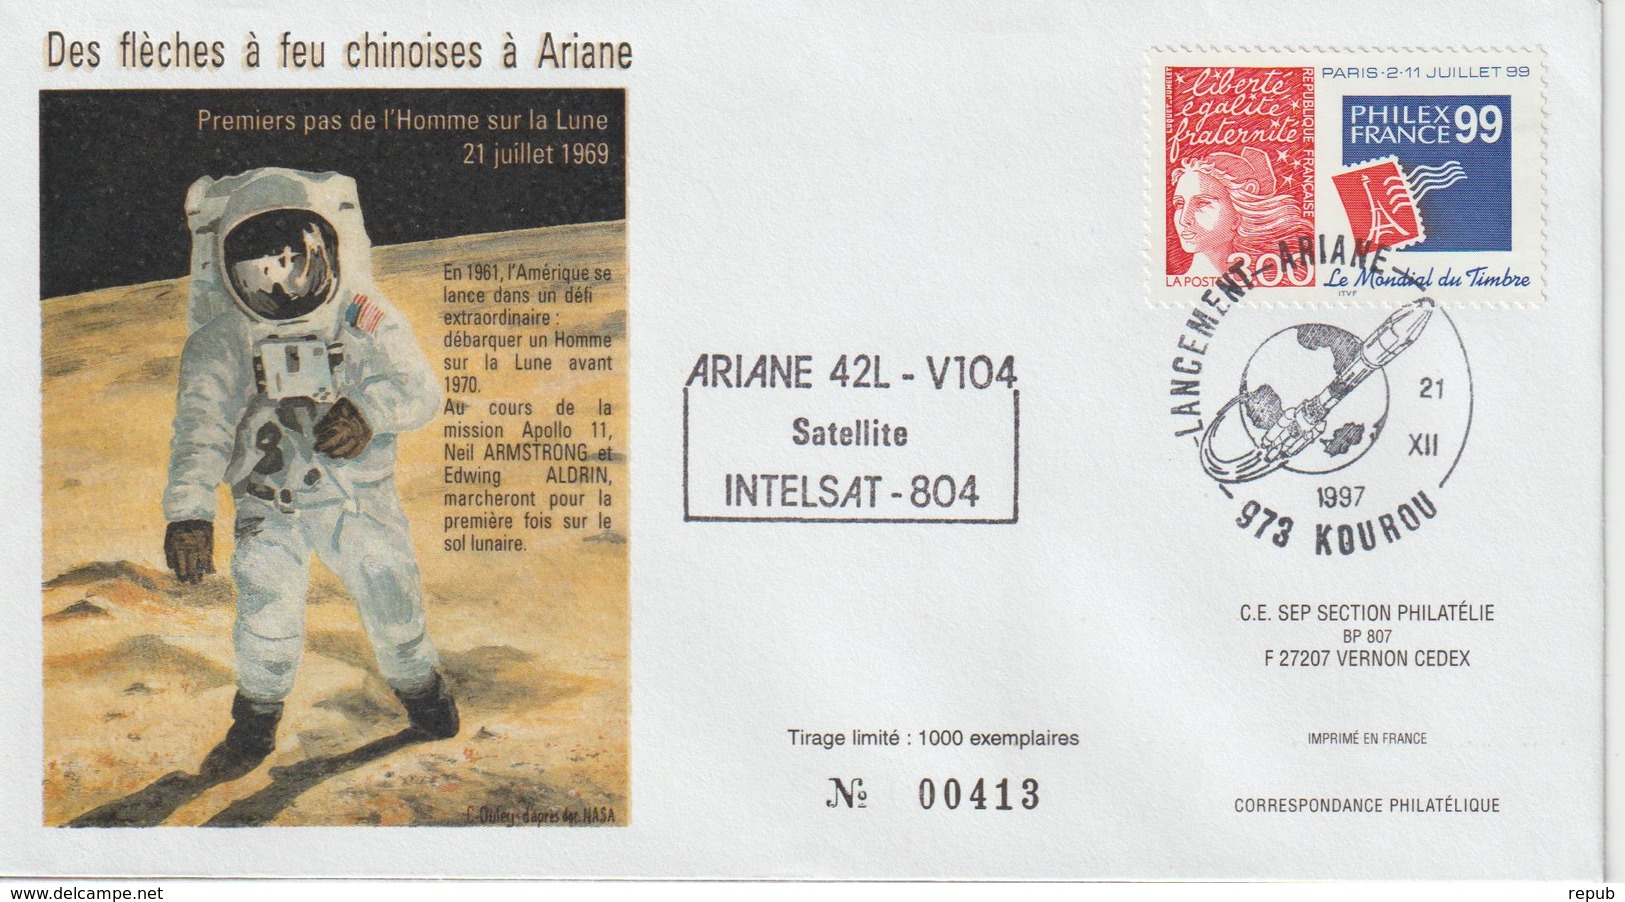 France Kourou 1997 Lancement Ariane Vol 104 - Matasellos Conmemorativos